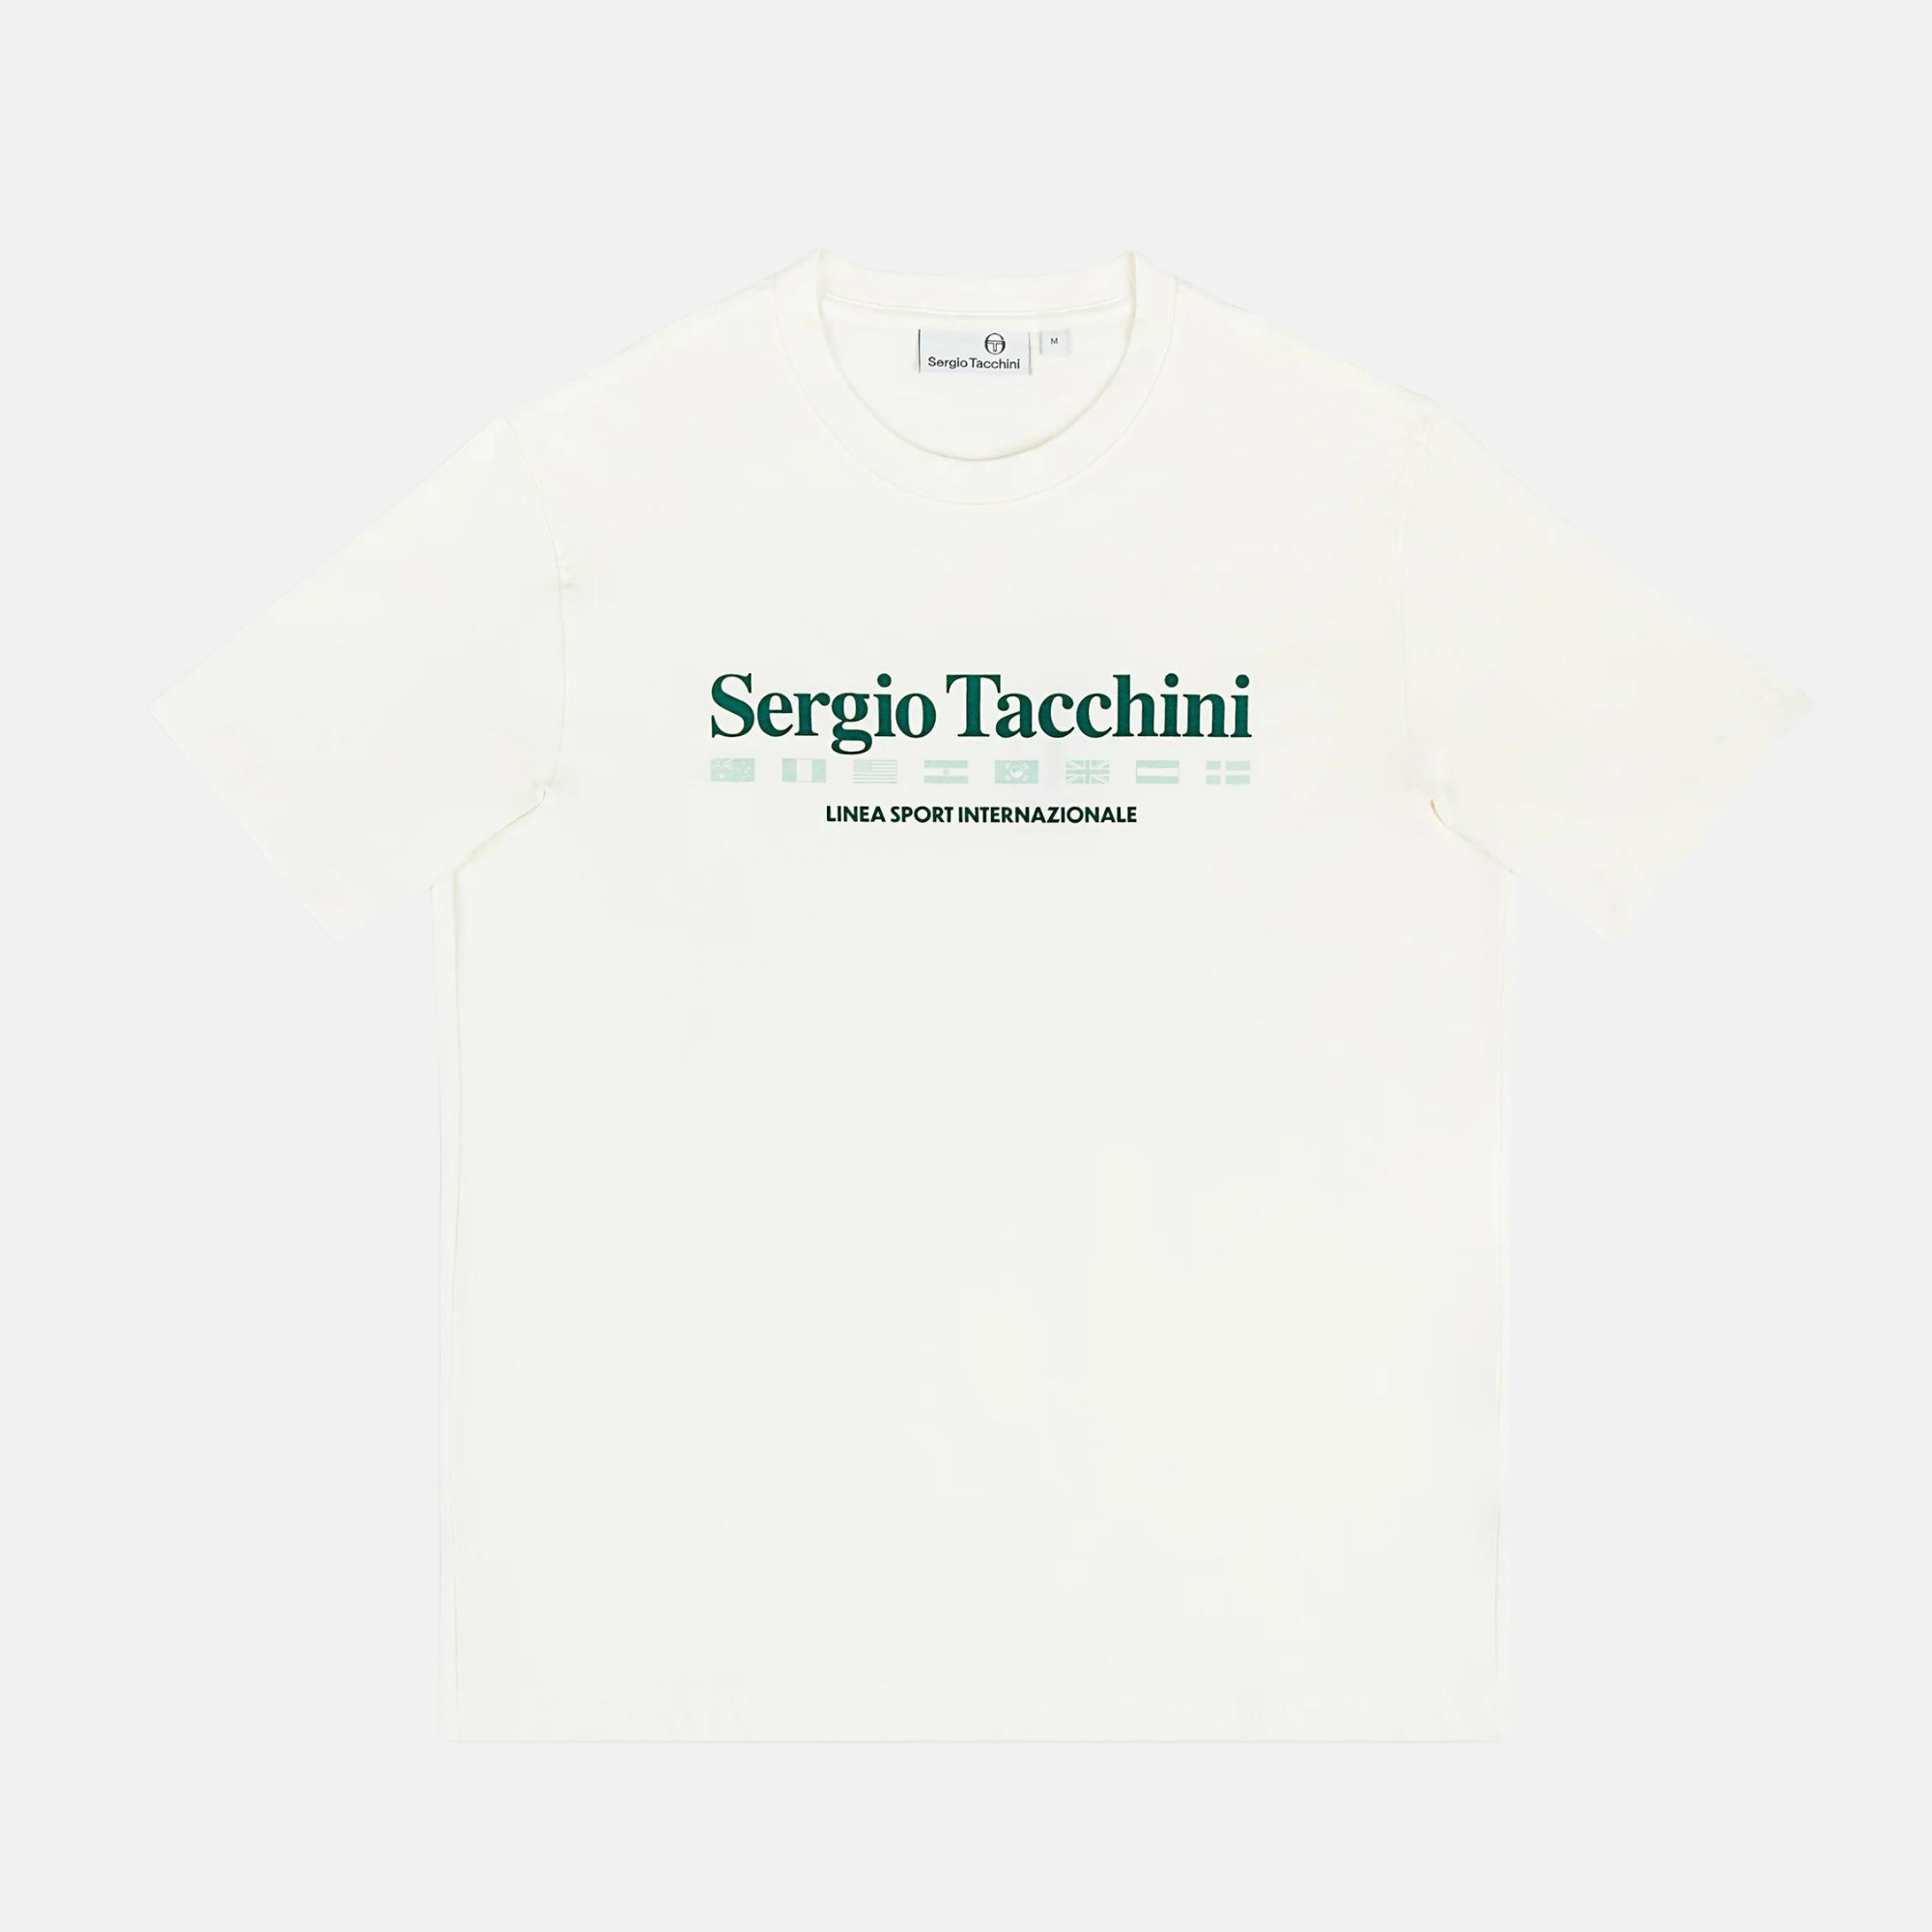 Sergio Tacchini Monda Gardenia T-Shirt